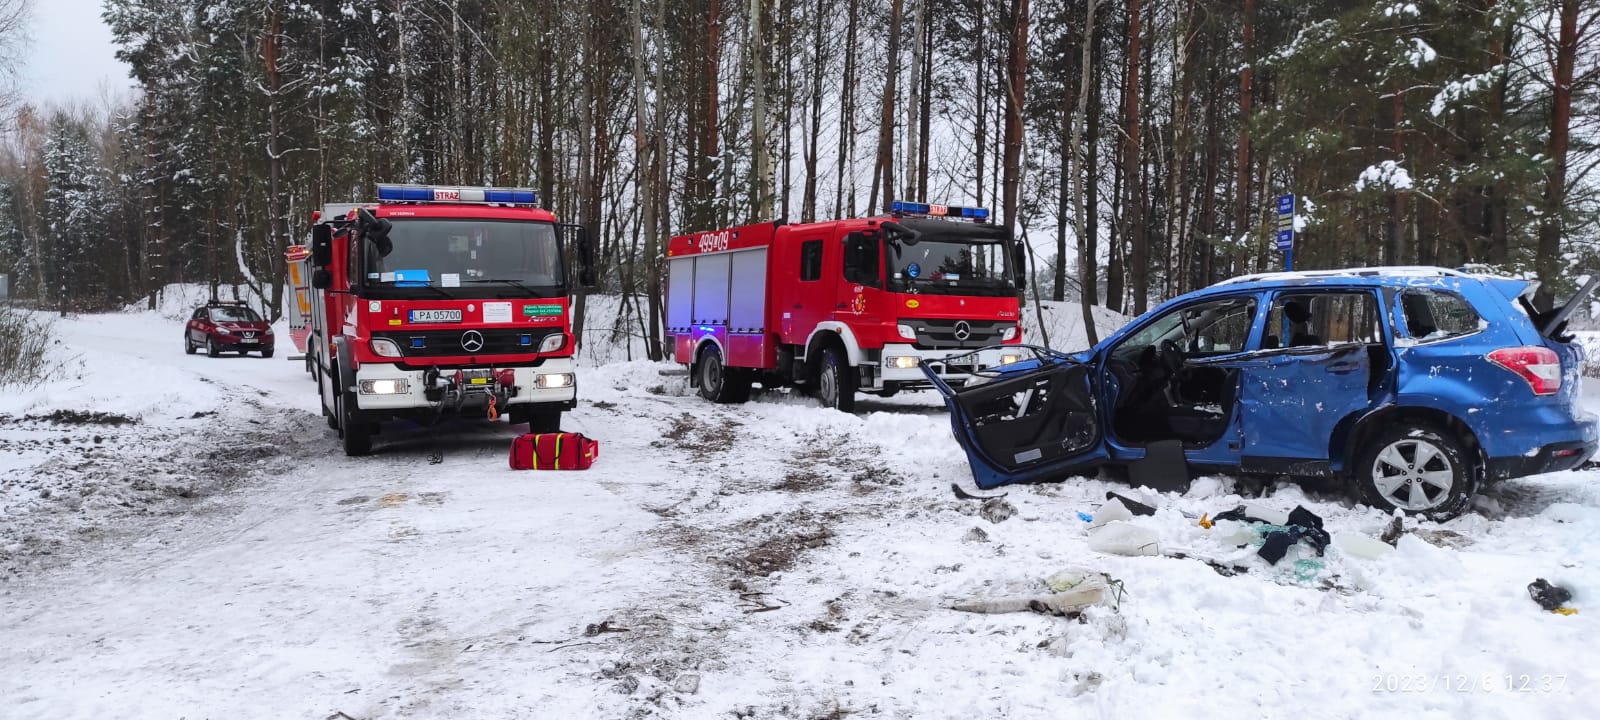 Okres zimowy - spadł śnieg. Uszkodzony samochód osobowy stoi na leśnej drodze. Za nim dwa samochody bojowe straży pożarnej.